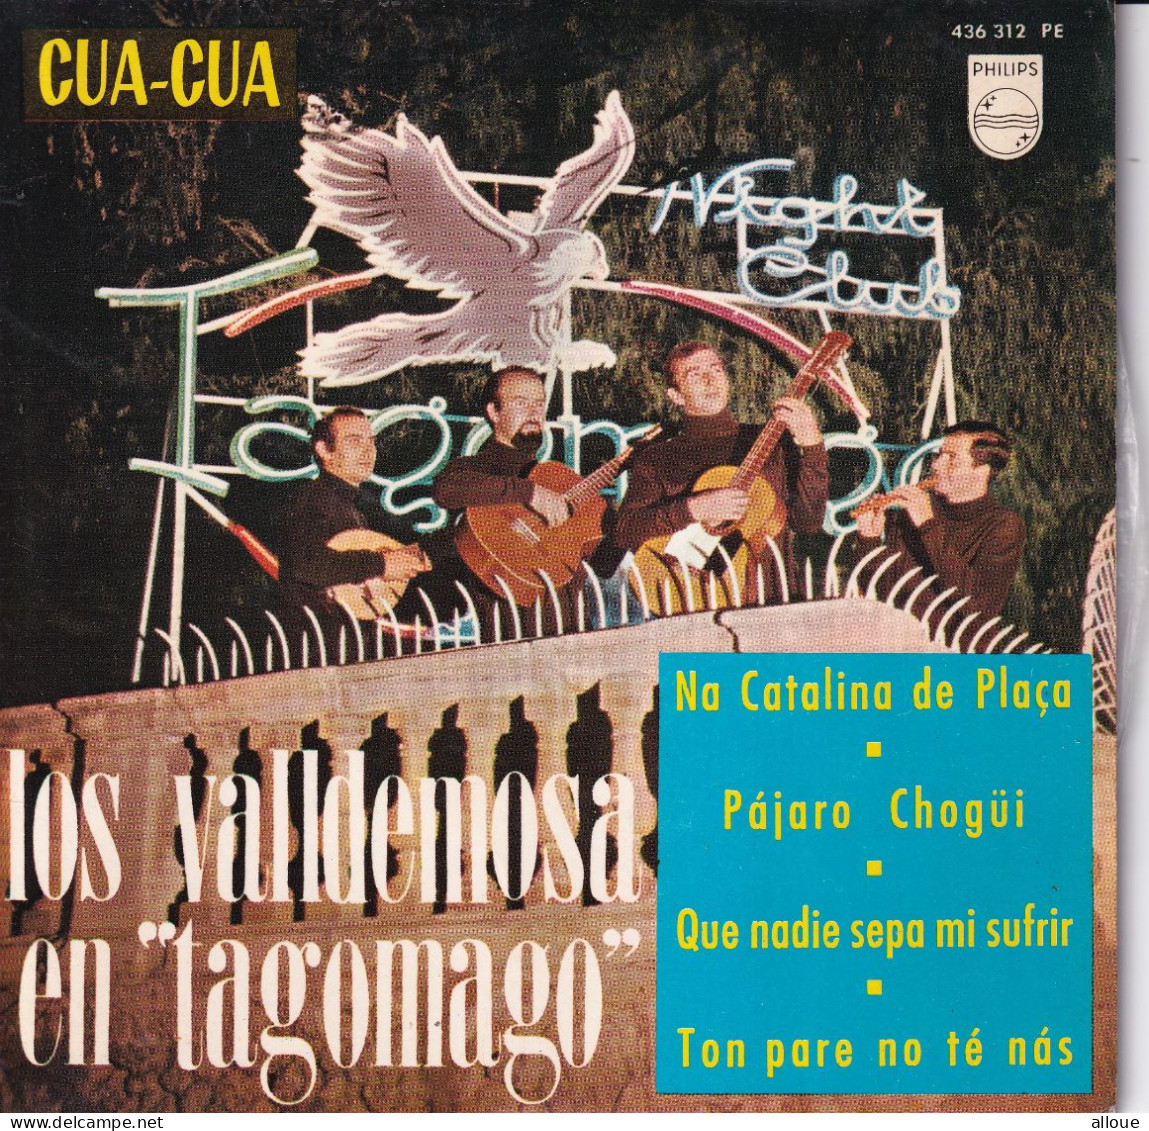 LOS VALLDEMOSA EN "TAGOMAGO" - ESPAGNE EP - Na Catalina De Plaça + 3 - Andere - Spaans